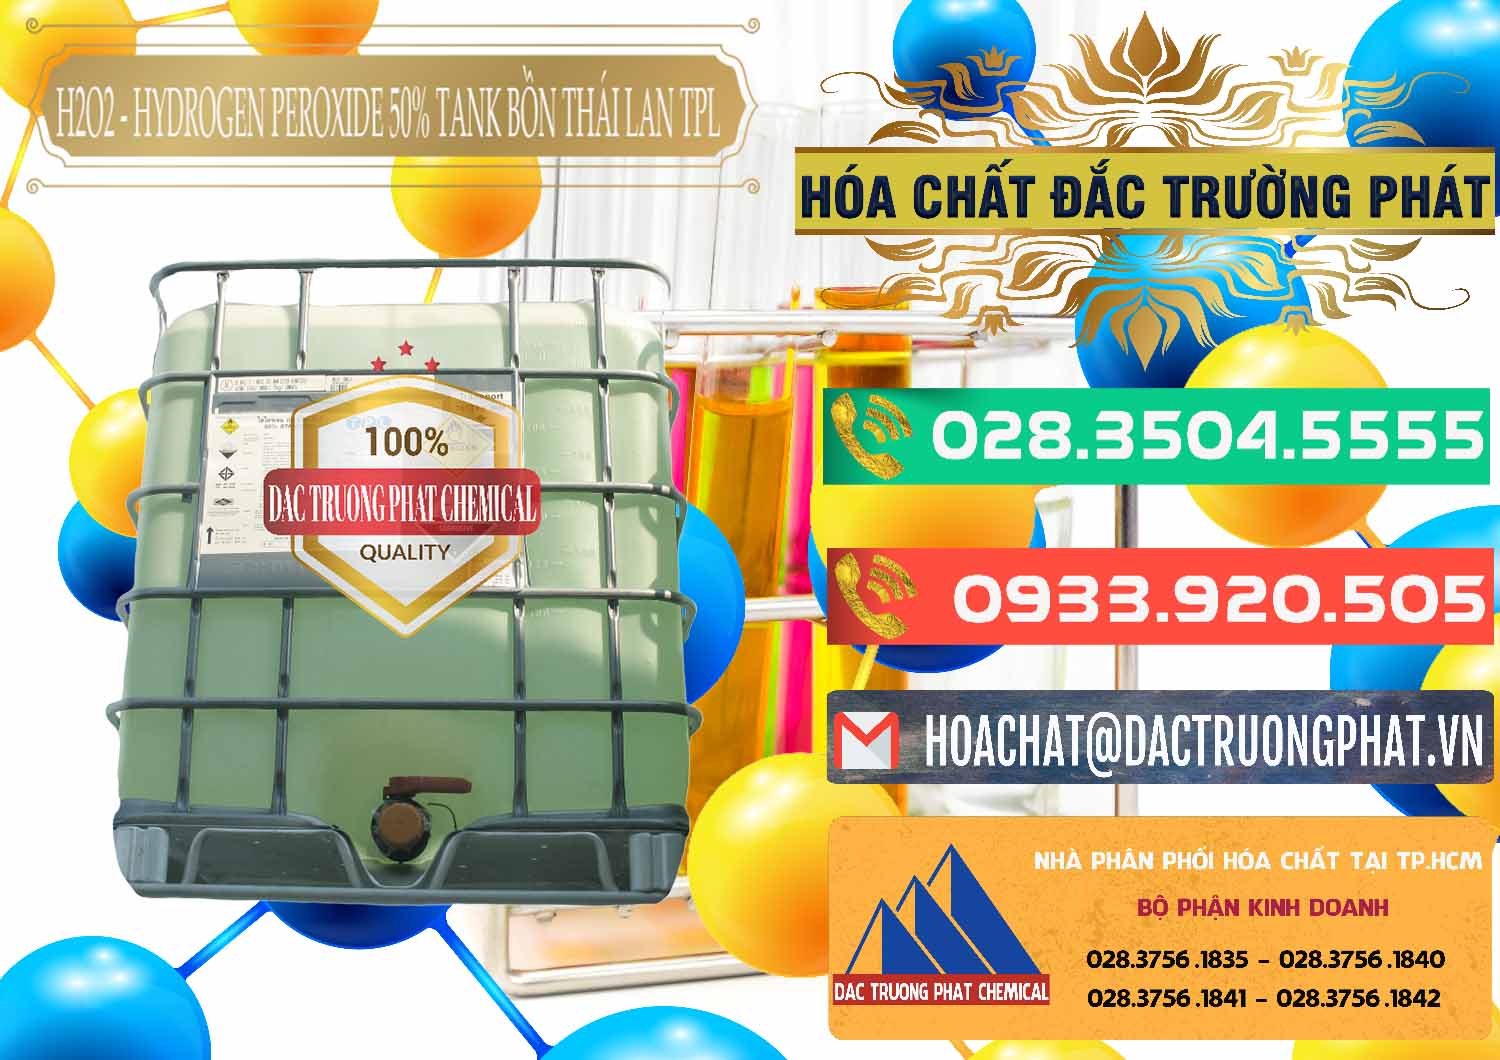 Cty chuyên bán _ cung ứng H2O2 - Hydrogen Peroxide 50% Tank IBC Bồn Thái Lan TPL - 0073 - Đơn vị chuyên cung cấp & bán hóa chất tại TP.HCM - congtyhoachat.com.vn